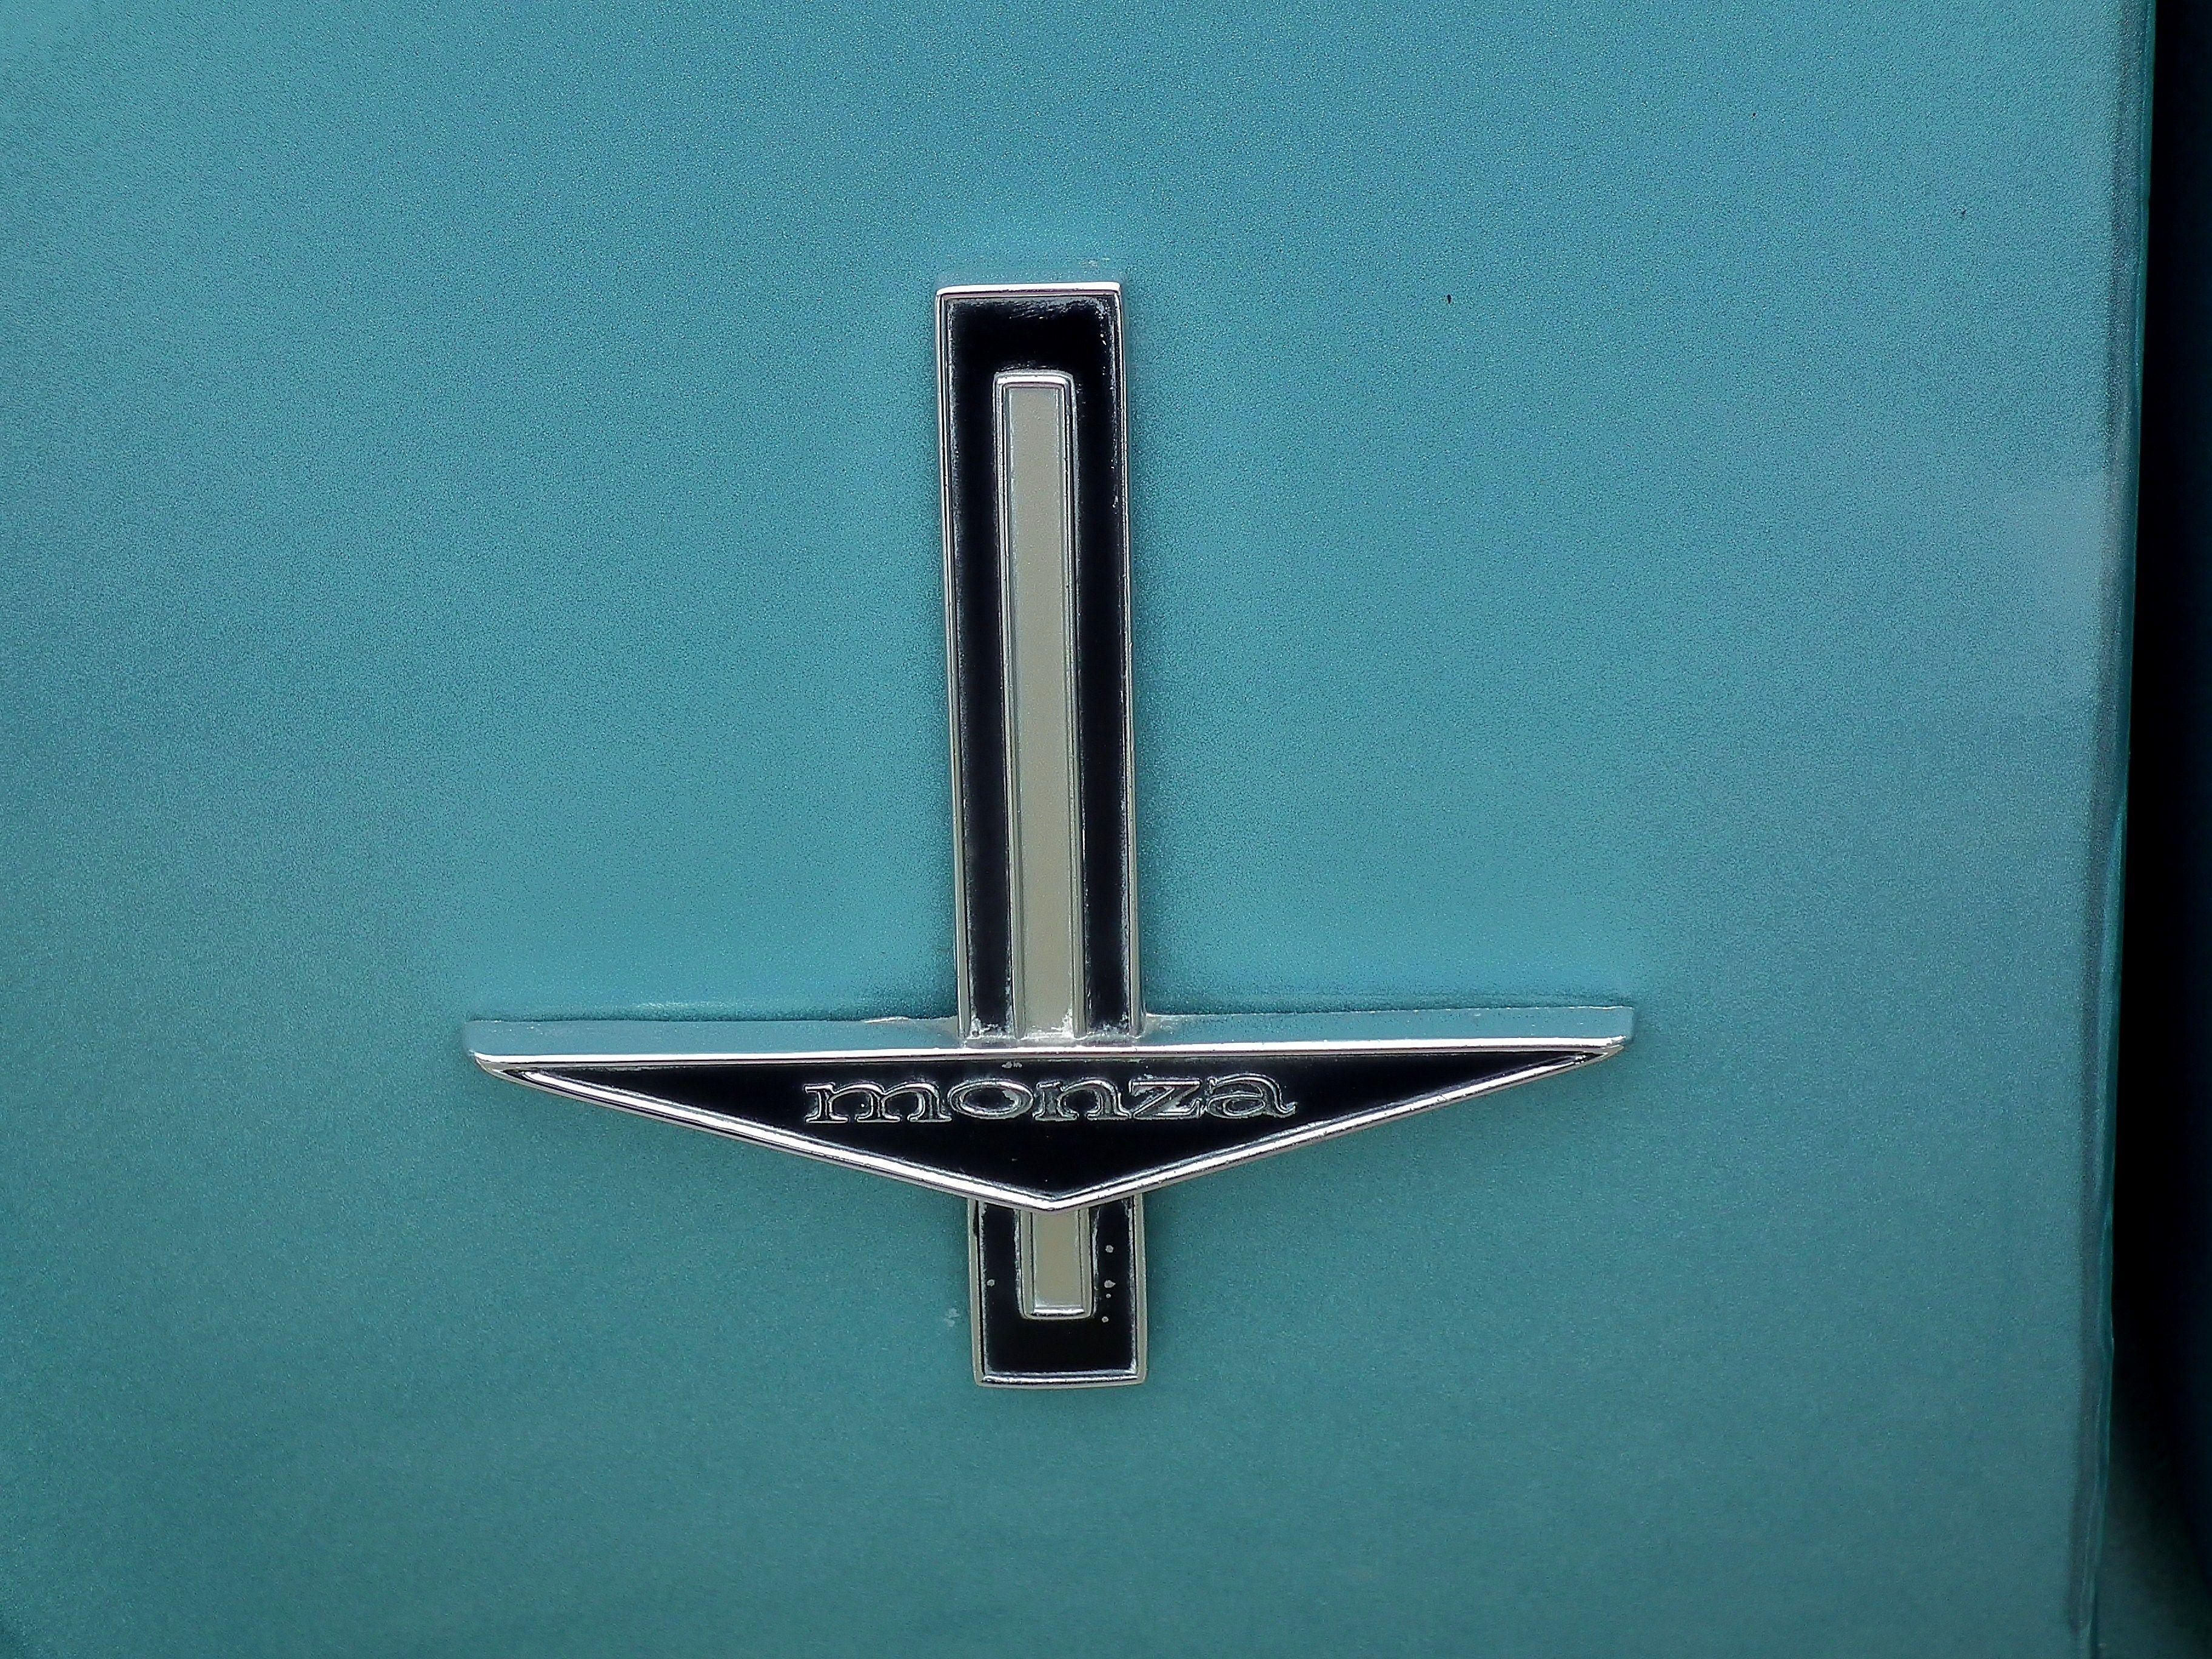 Corvair Logo - Chevrolet Corvair Monza